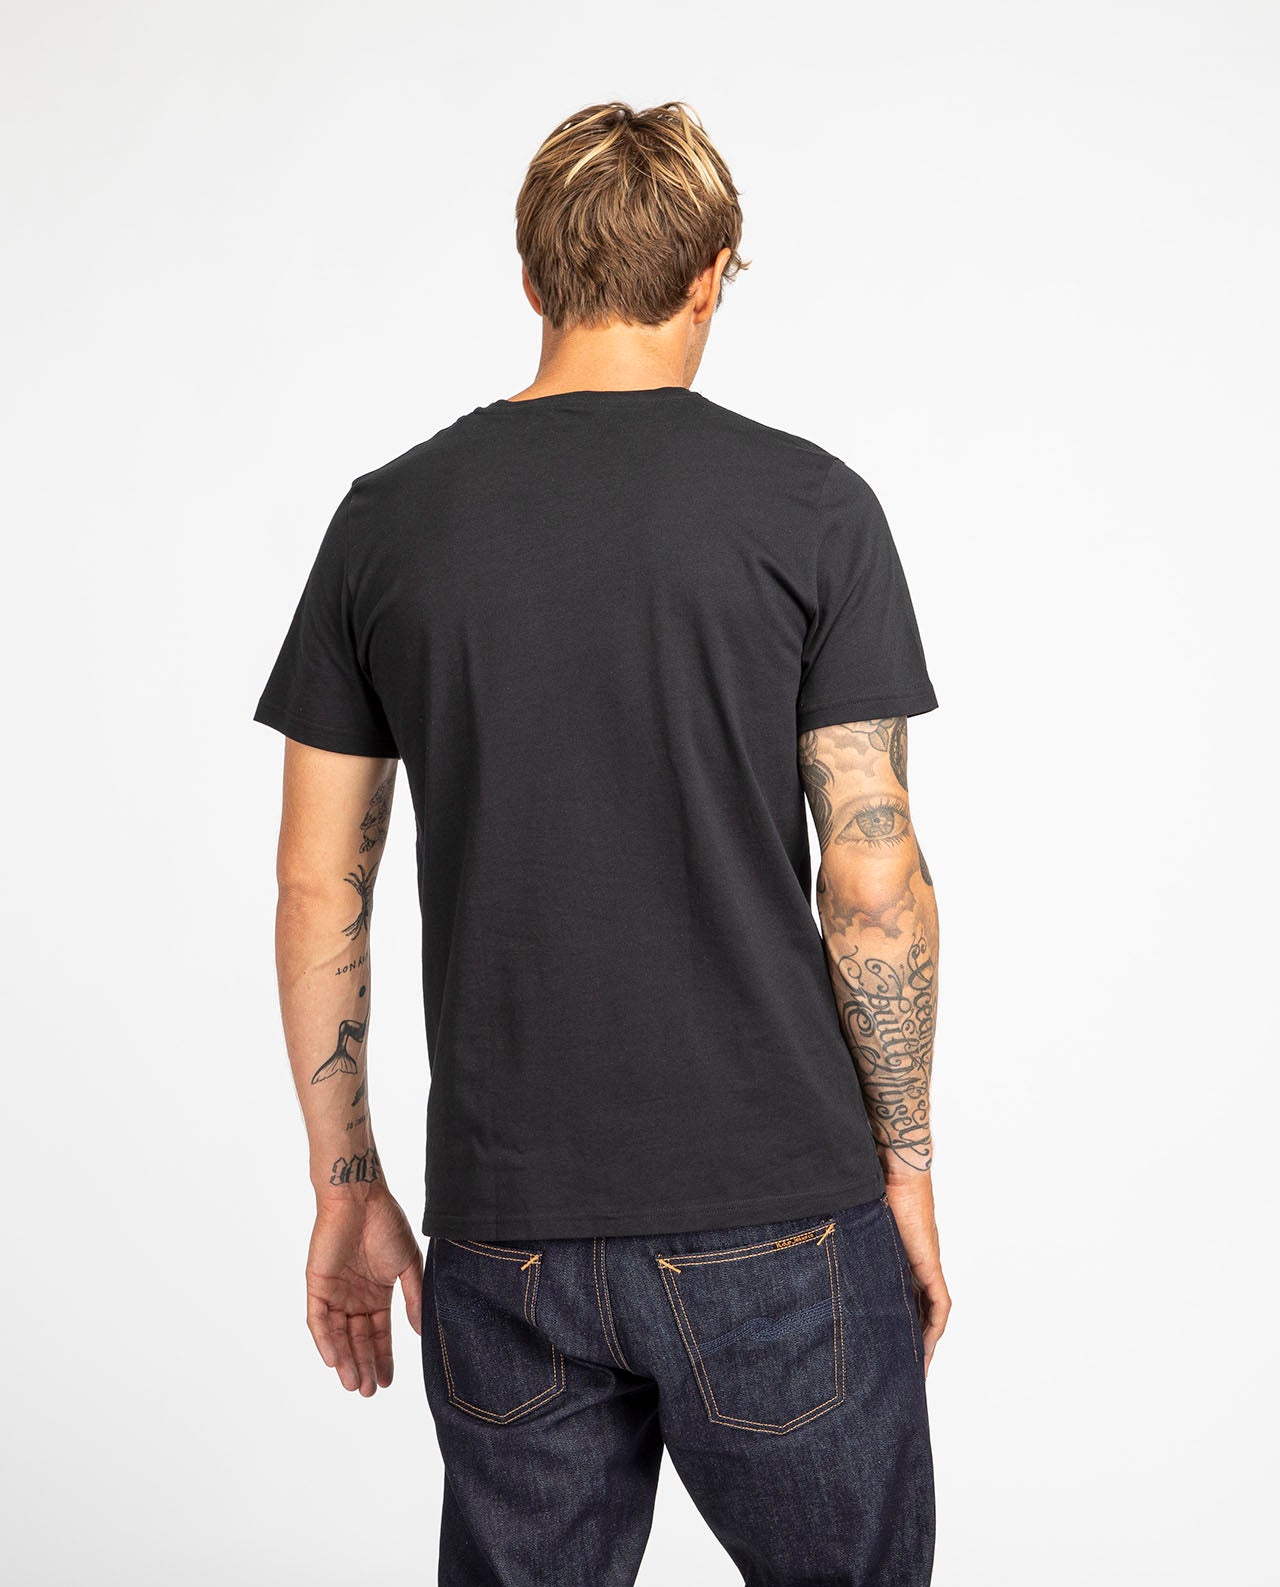 marché commun organic basics t-shirt homme manches courtes coton biologique basique éco-responsable éthique noir